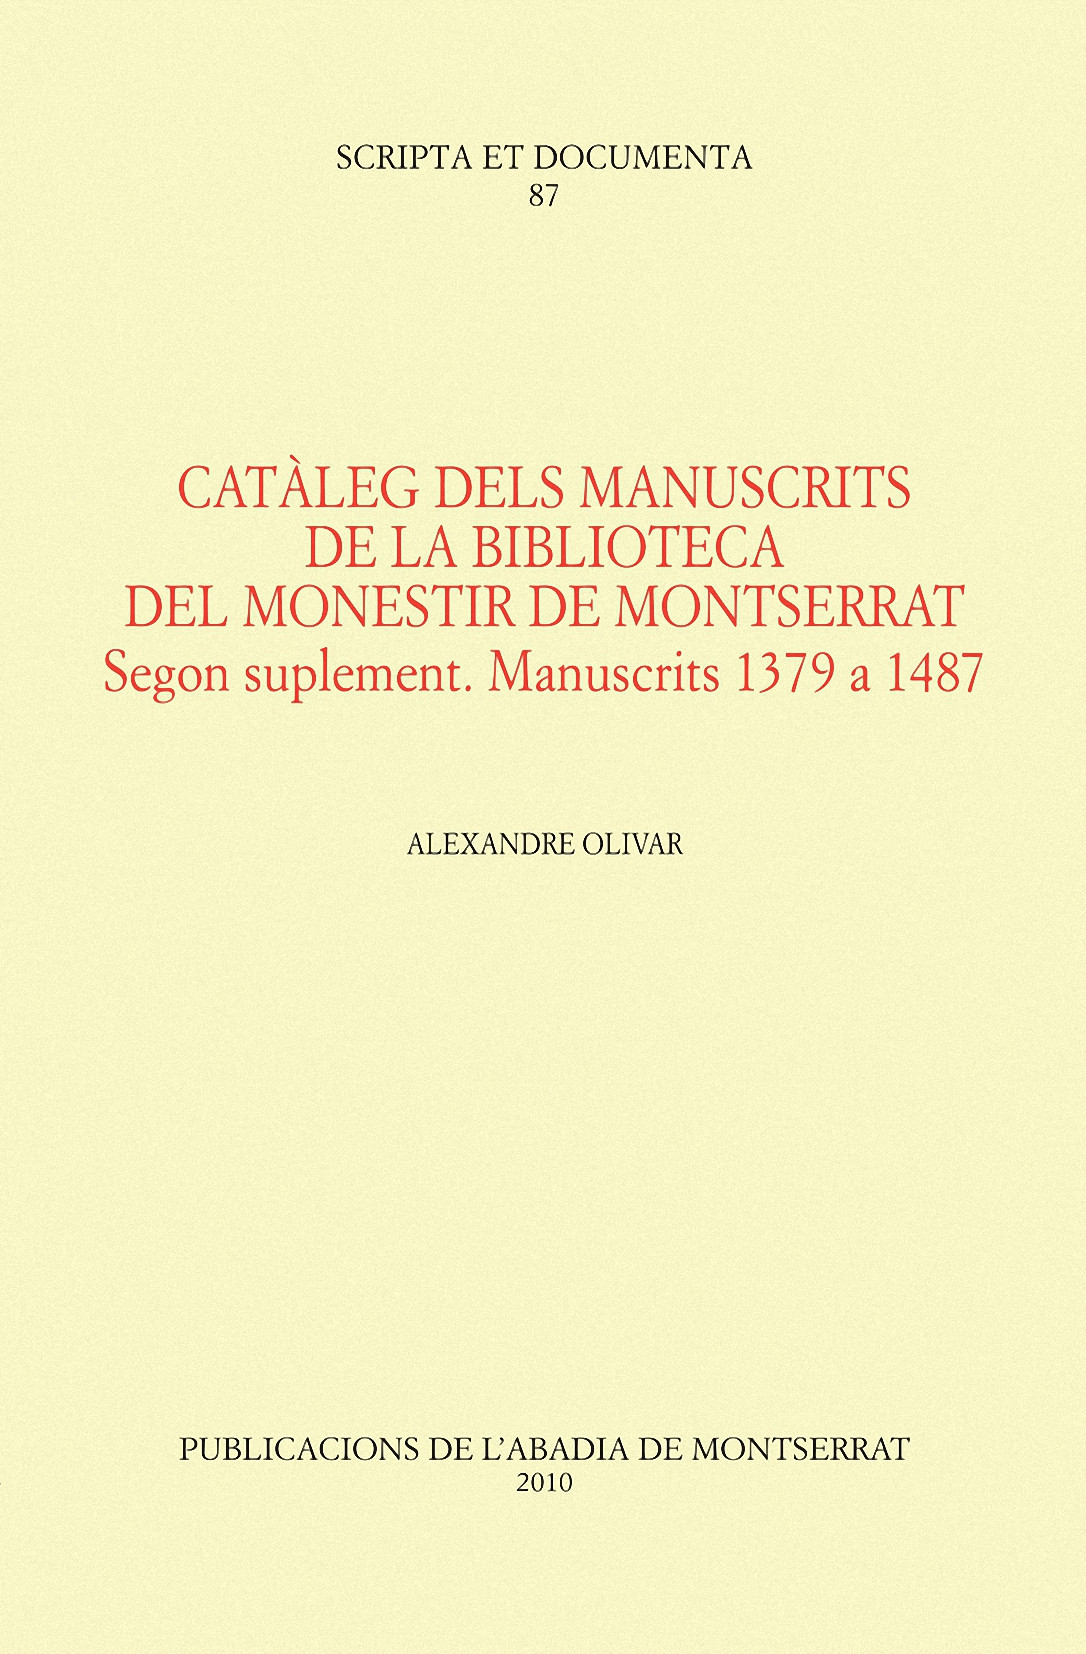 CATÀLEG DELS MANUSCRITS DE LA BIBLIOTECA DEL MONESTIR DE MONTSERRAT. SEGON SUPLE